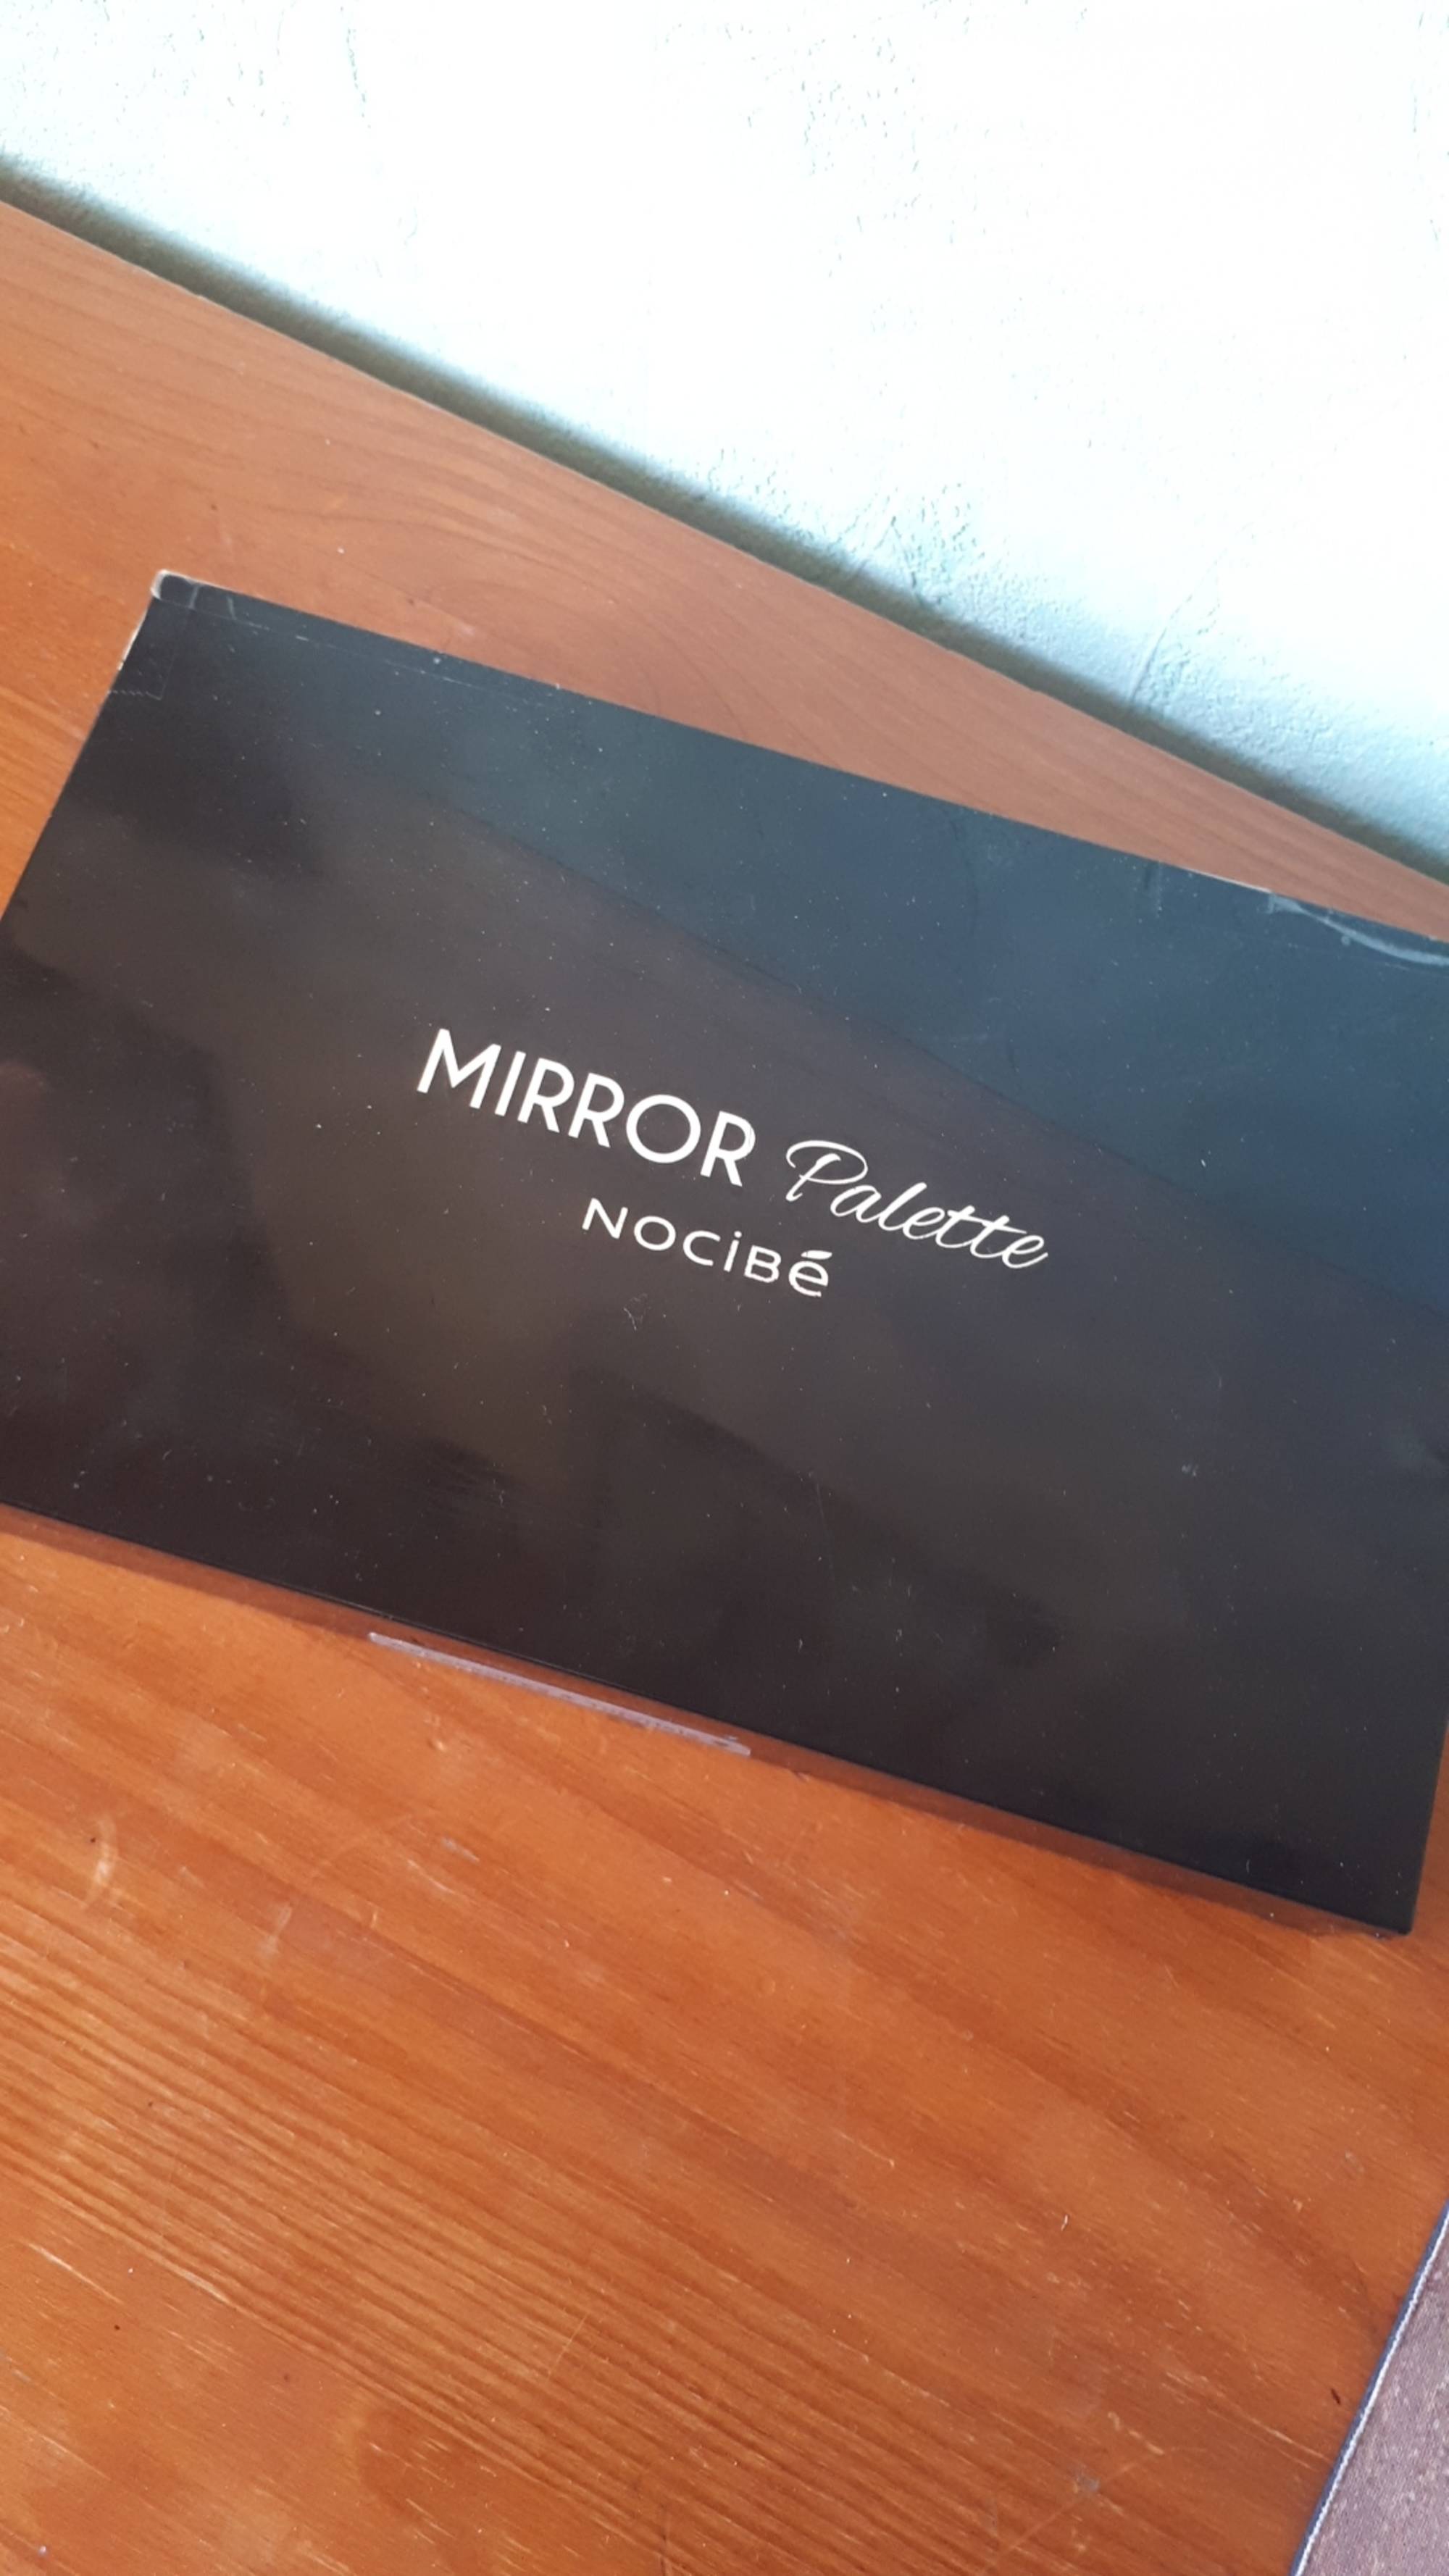 NOCIBÉ - Mirror Palette